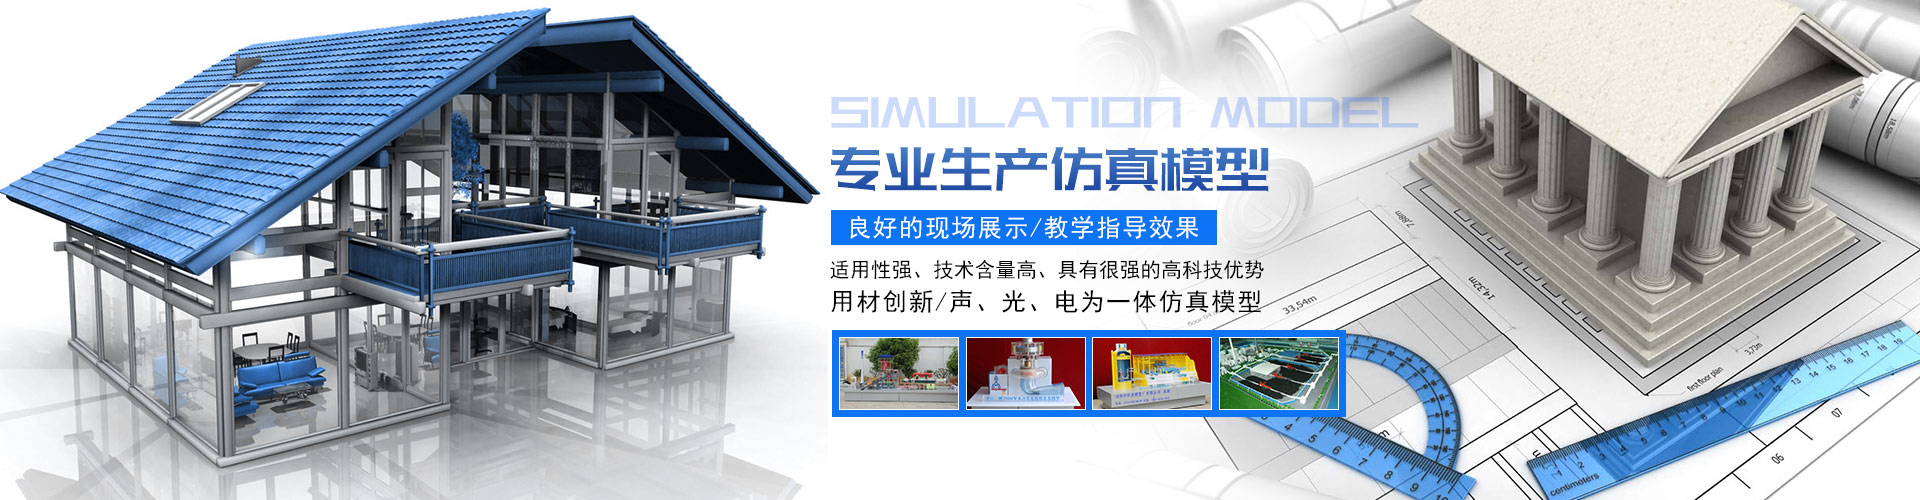 浏陽市(shì)科技模型廠有限公司 - 浏陽教學模型|浏陽展覽模型|浏陽科技館模型